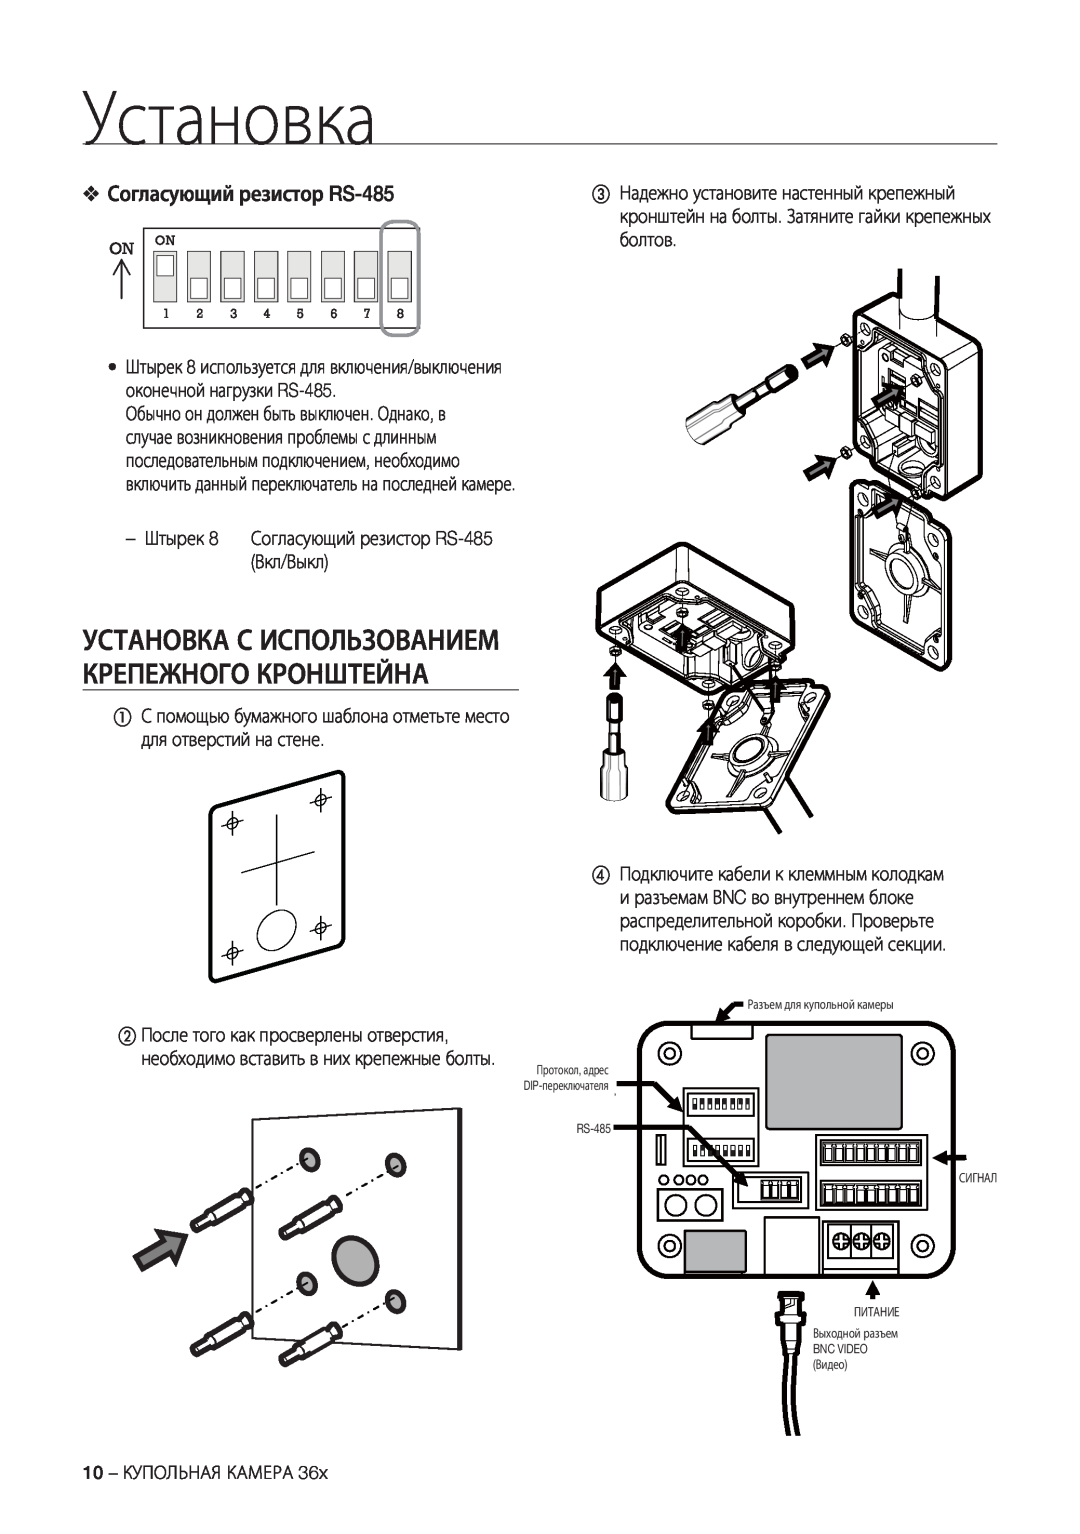 Samsung SCC-C7478P manual Установка С Использованием Крепежного Кронштейна, Согласующий резистор RS-485, On On 